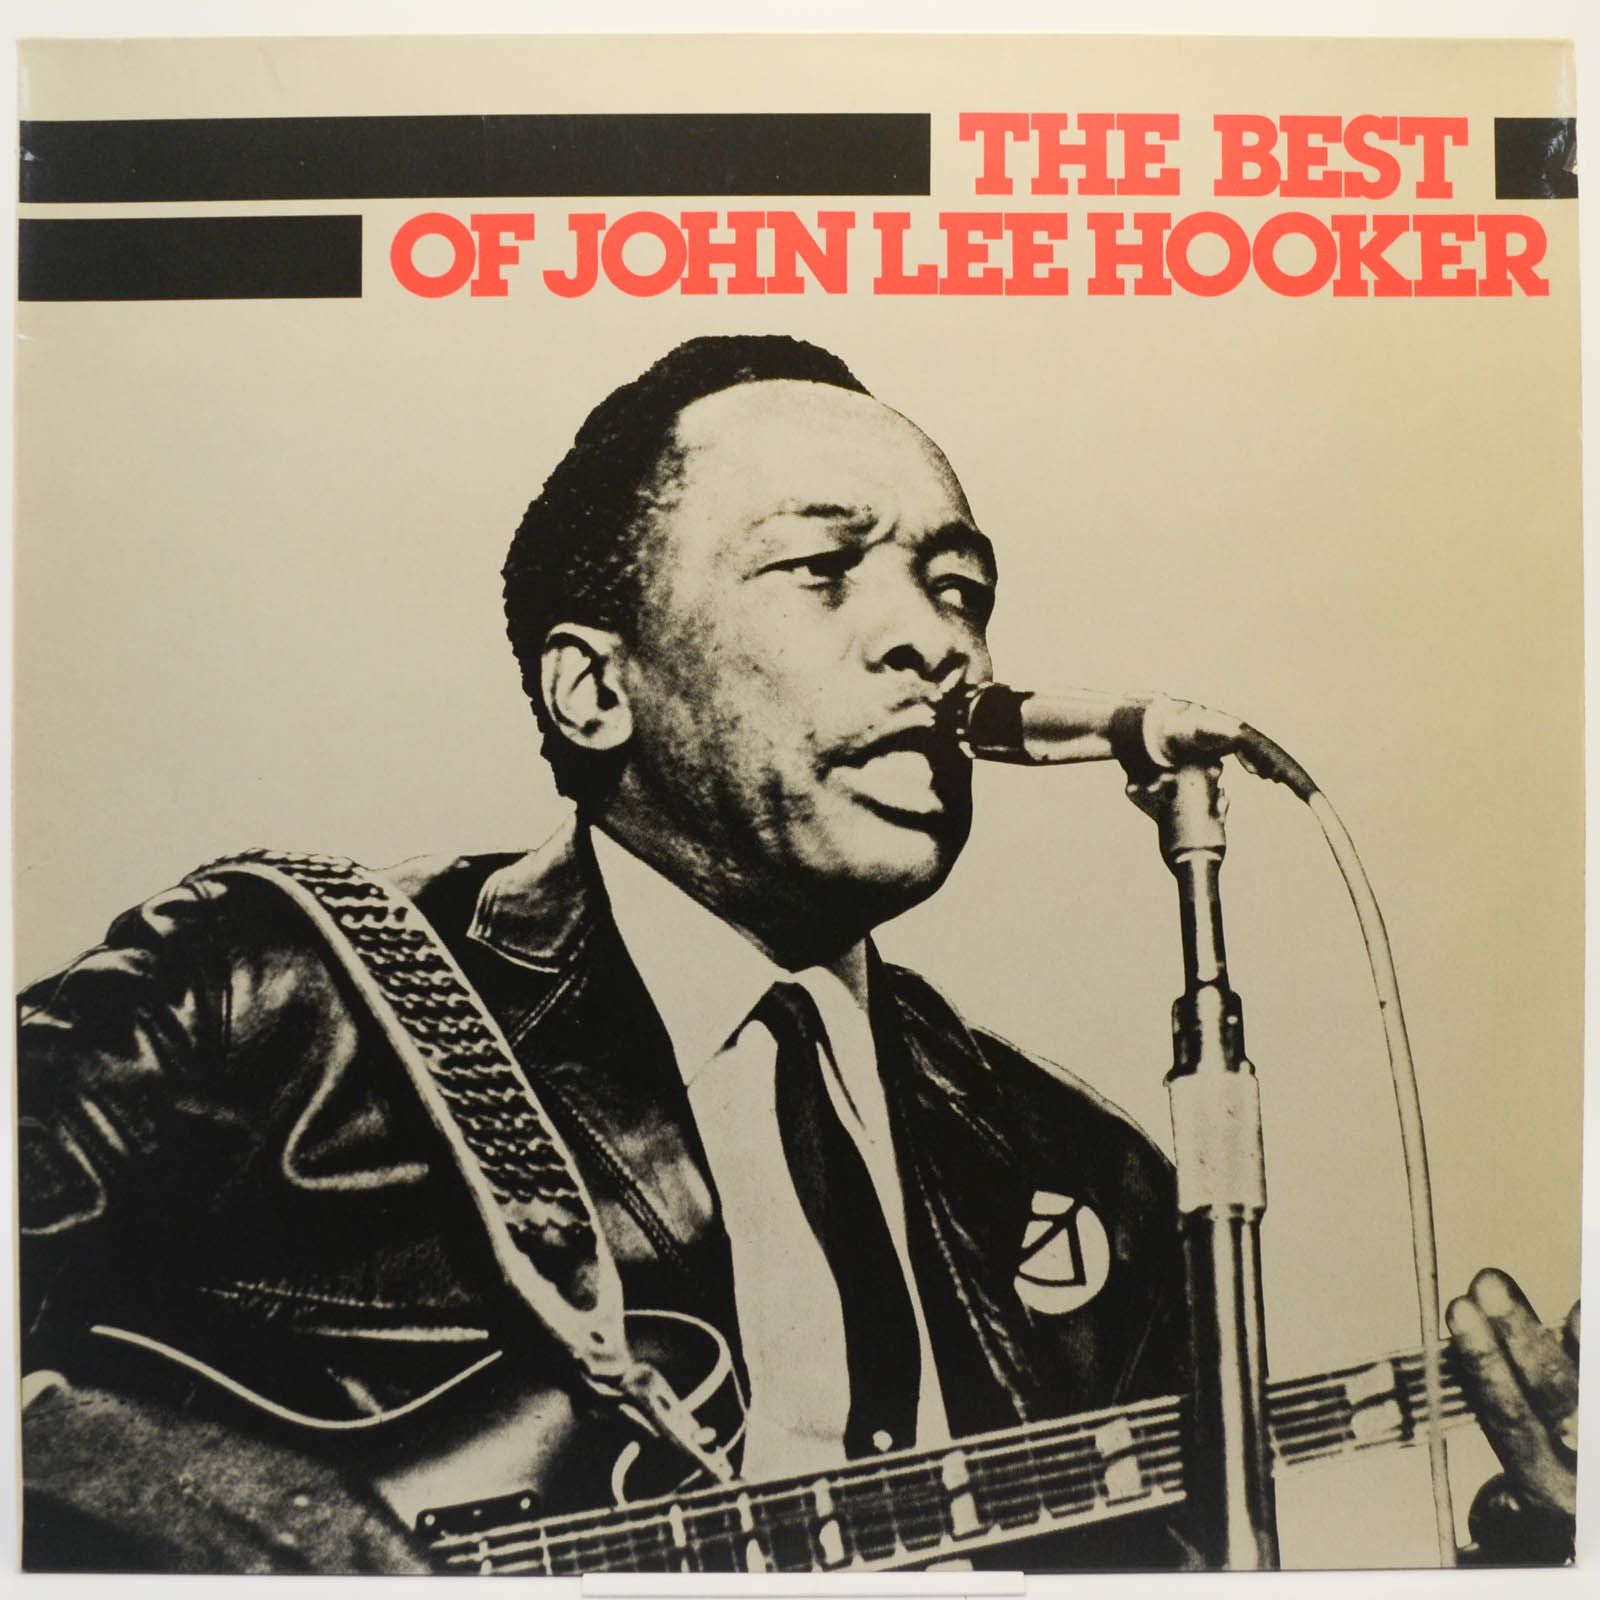 John Lee Hooker — The Best Of John Lee Hooker, 1976